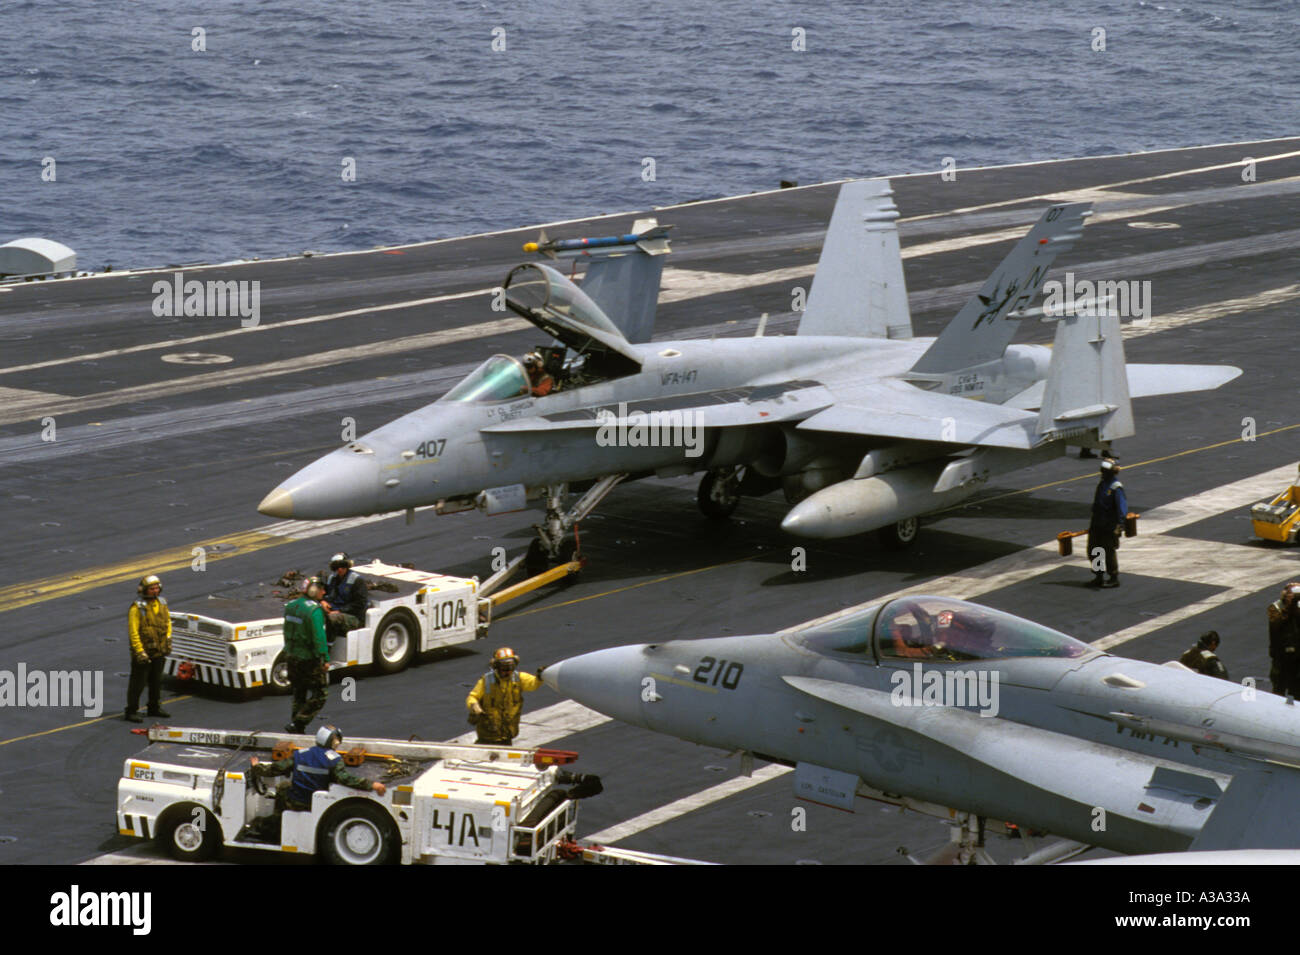 f-a-18-hornet-being-towed-on-deck-of-aircraft-carrier-nimitz-cvn-68-A3A33A.jpg